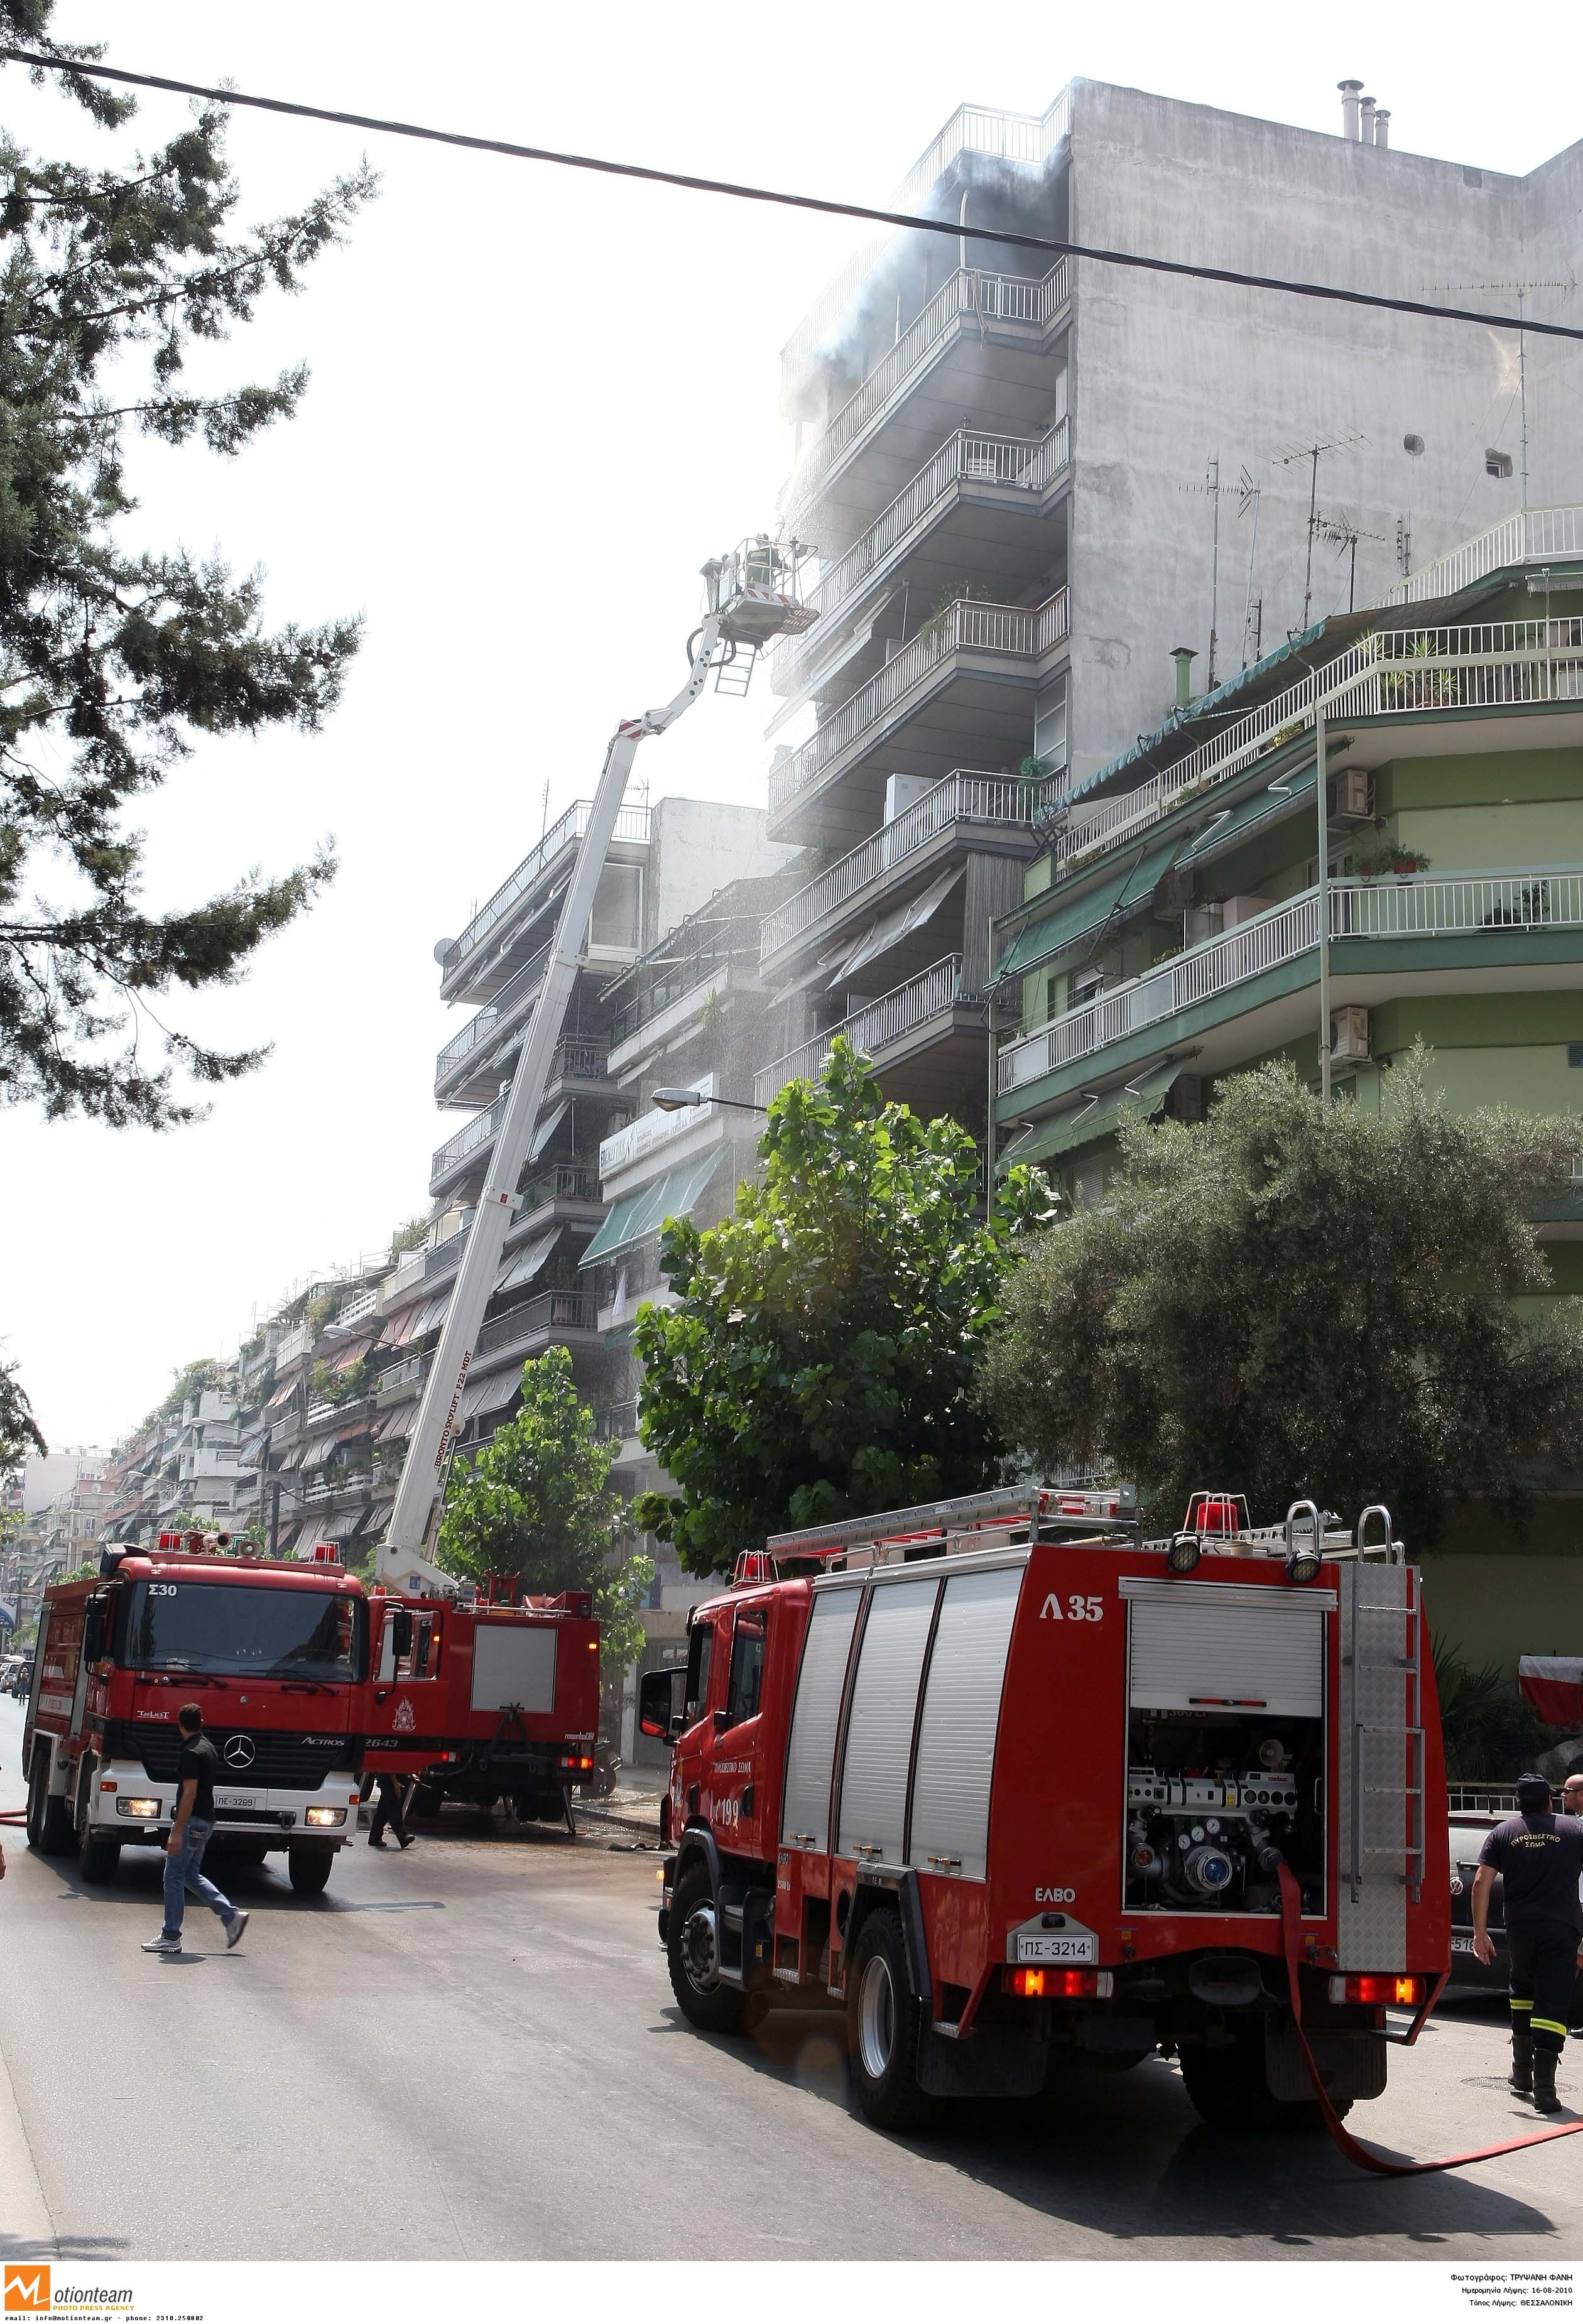 Οι πυροσβέστες έφταναν μέχρι τον 6ο όροφο της πολυκατοικίας, ενώ η φωτιά ήταν στον 7ο - ΦΩΤΟ EUROKINISSI